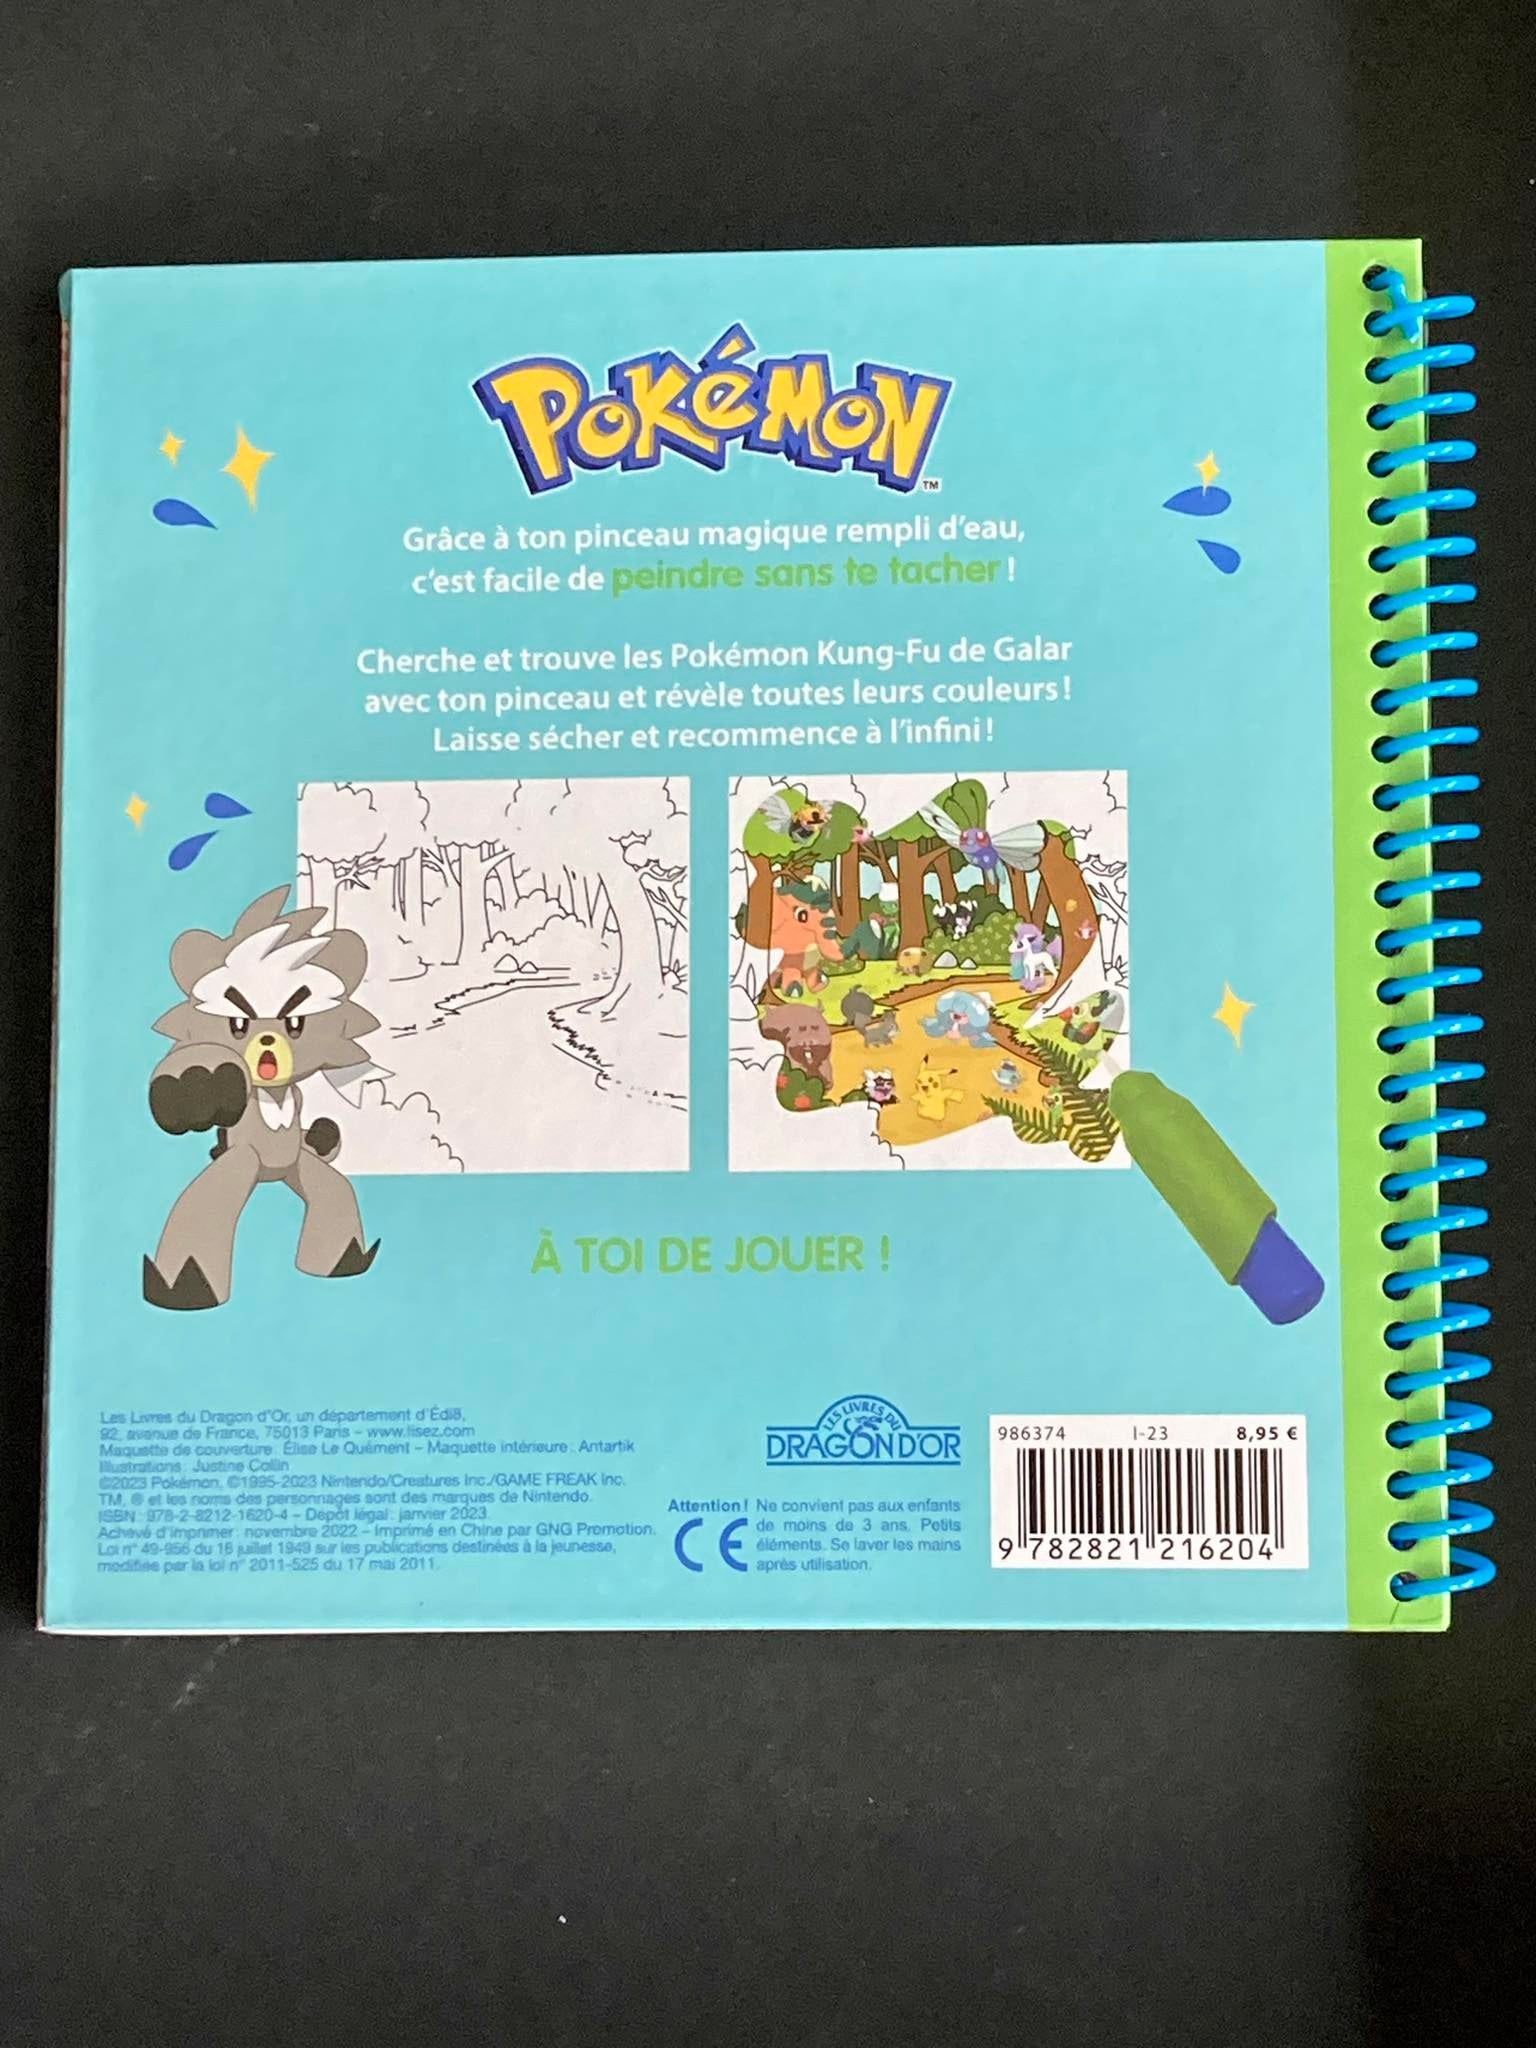 Pokémon - Pinceau magique - Les Pokémon Kung-Fu - The Pokémon Company -  Librairie L'Armitière